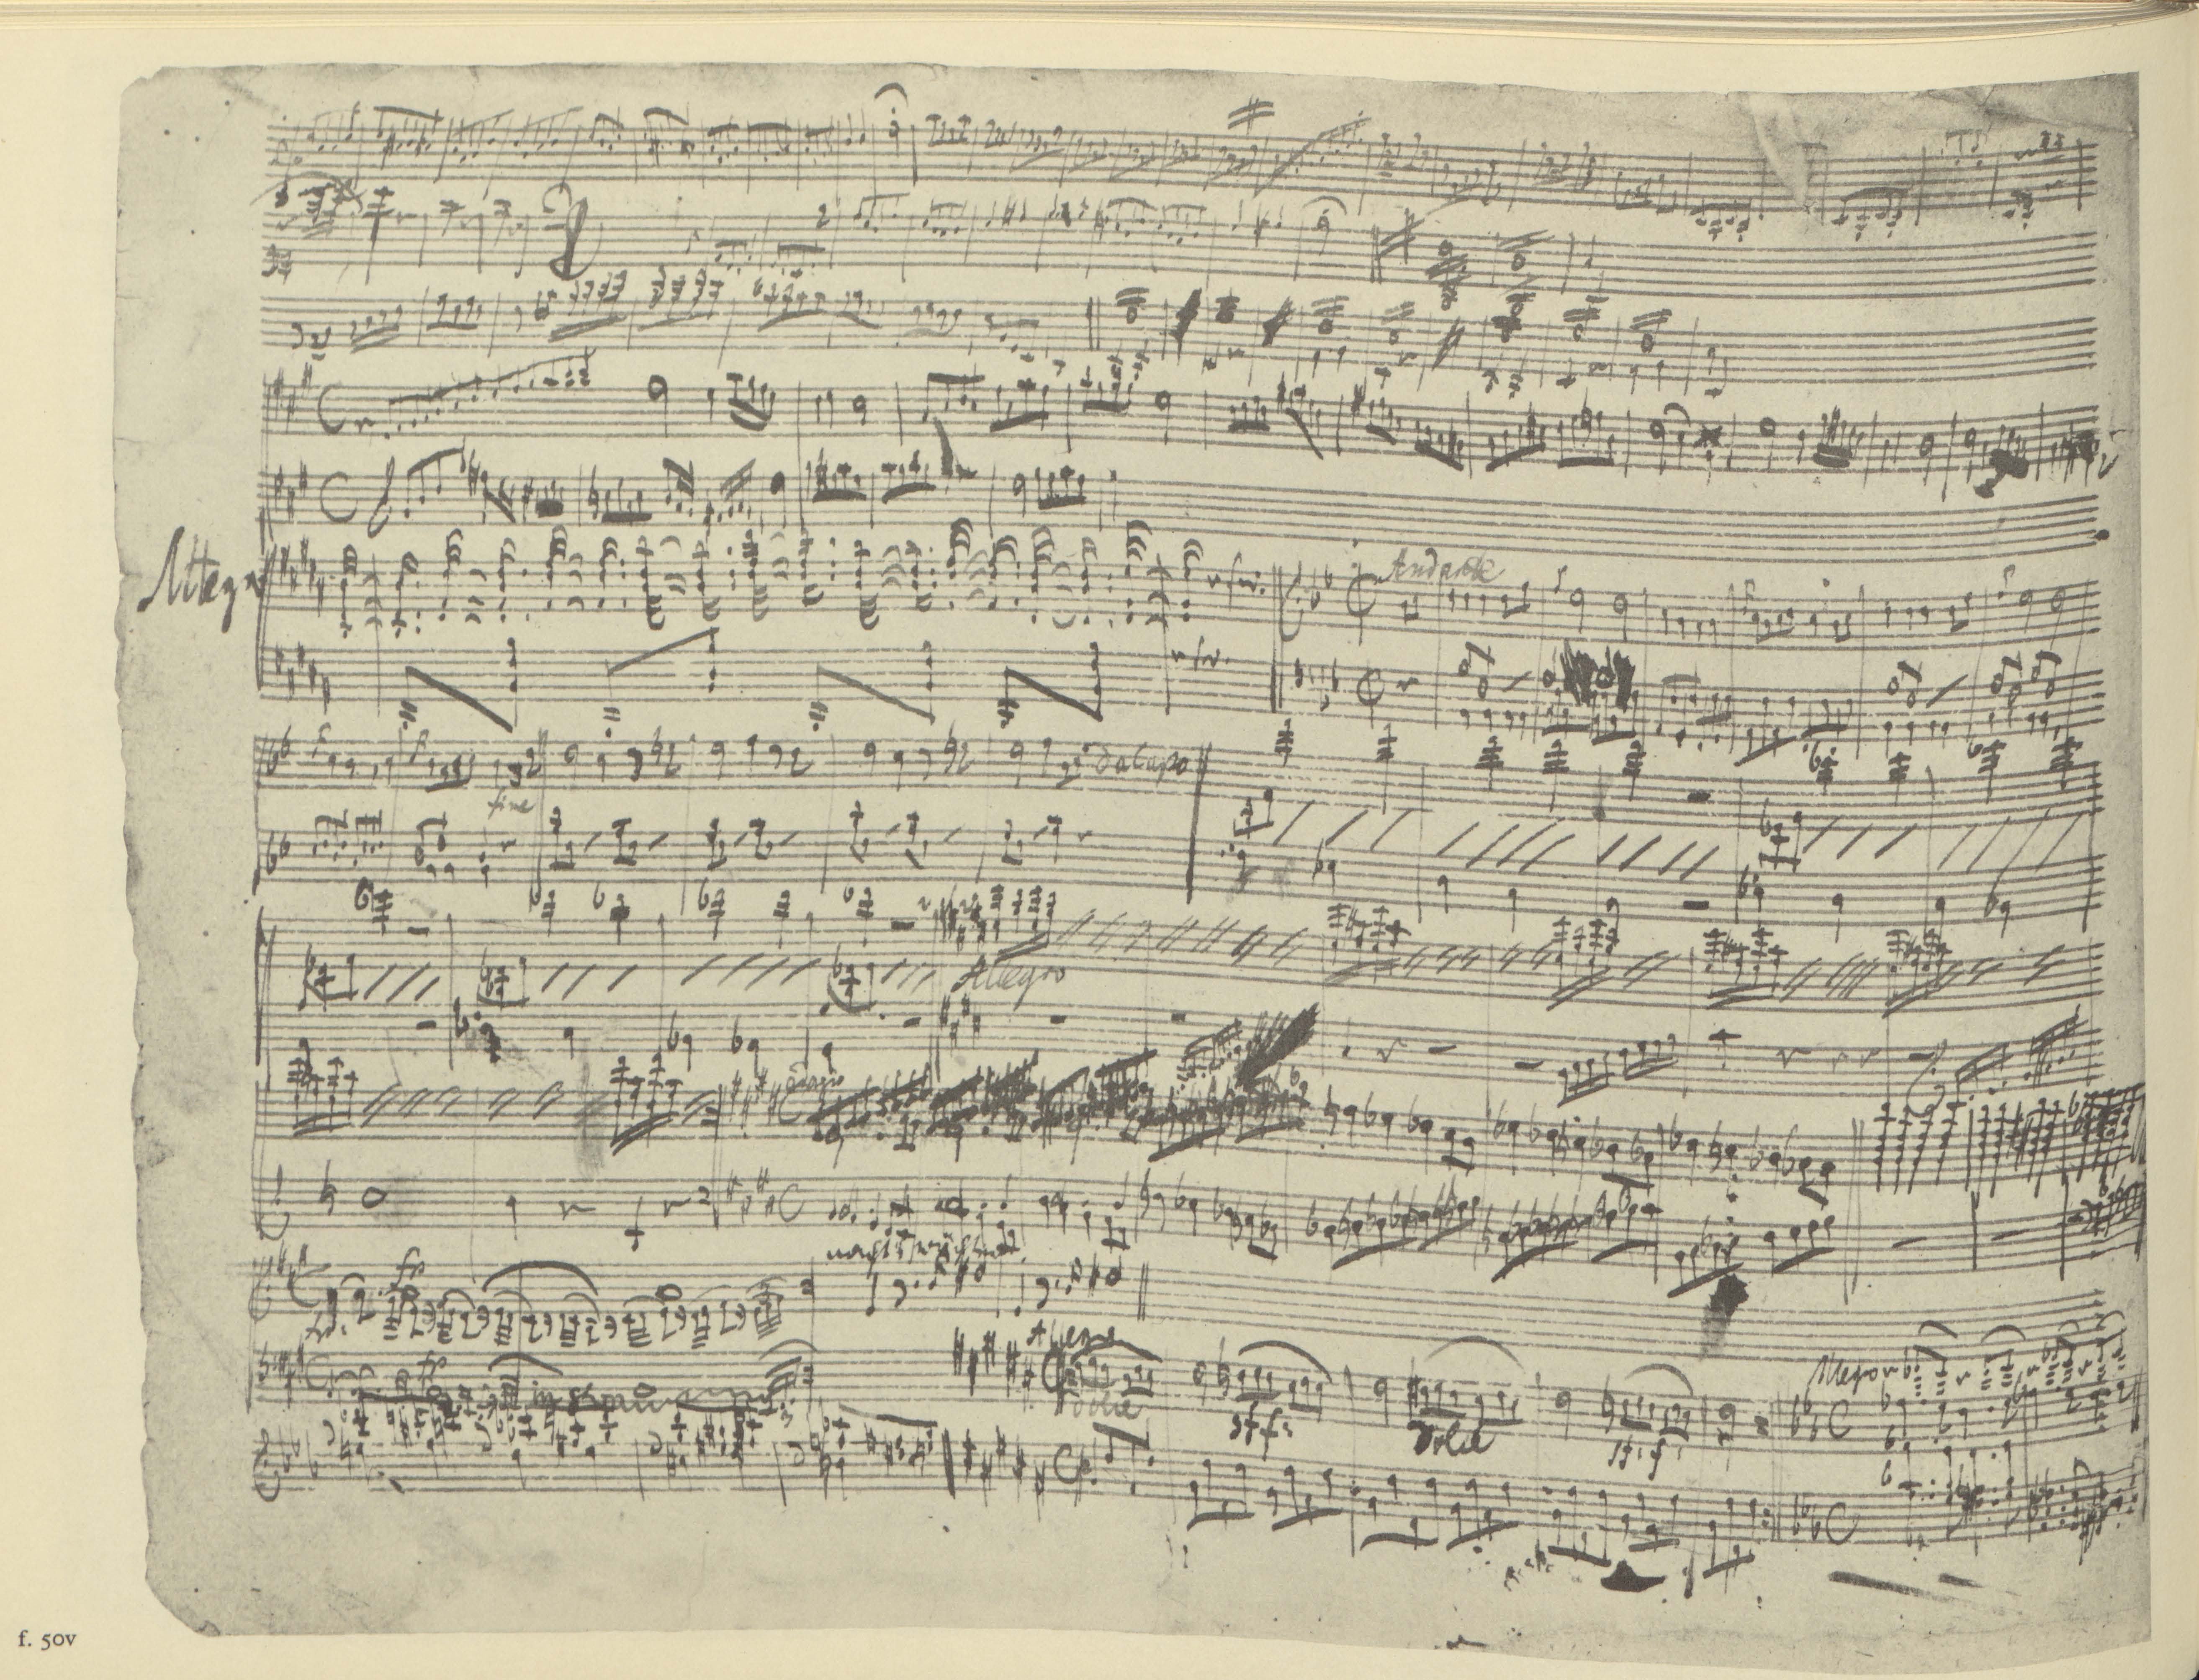 A page of dense handwritten sheet music